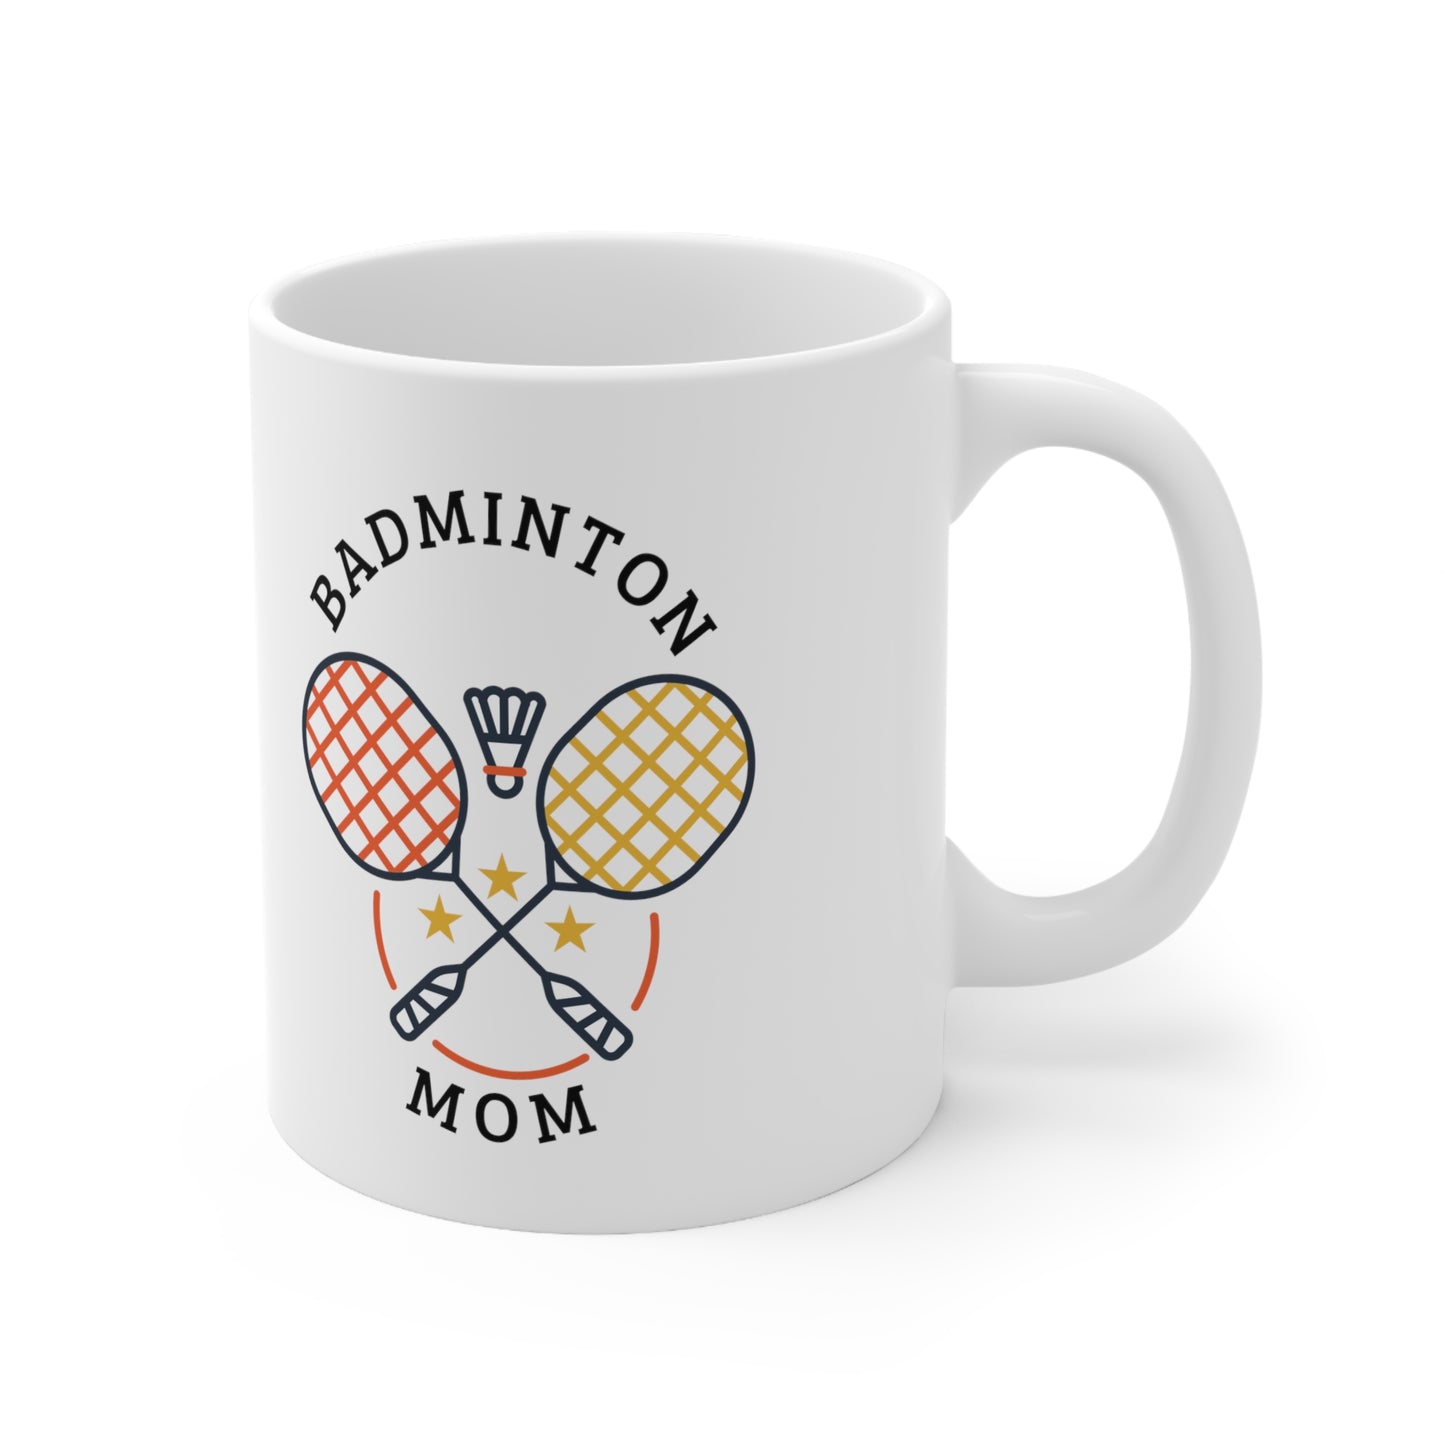 Badminton Mom Mug